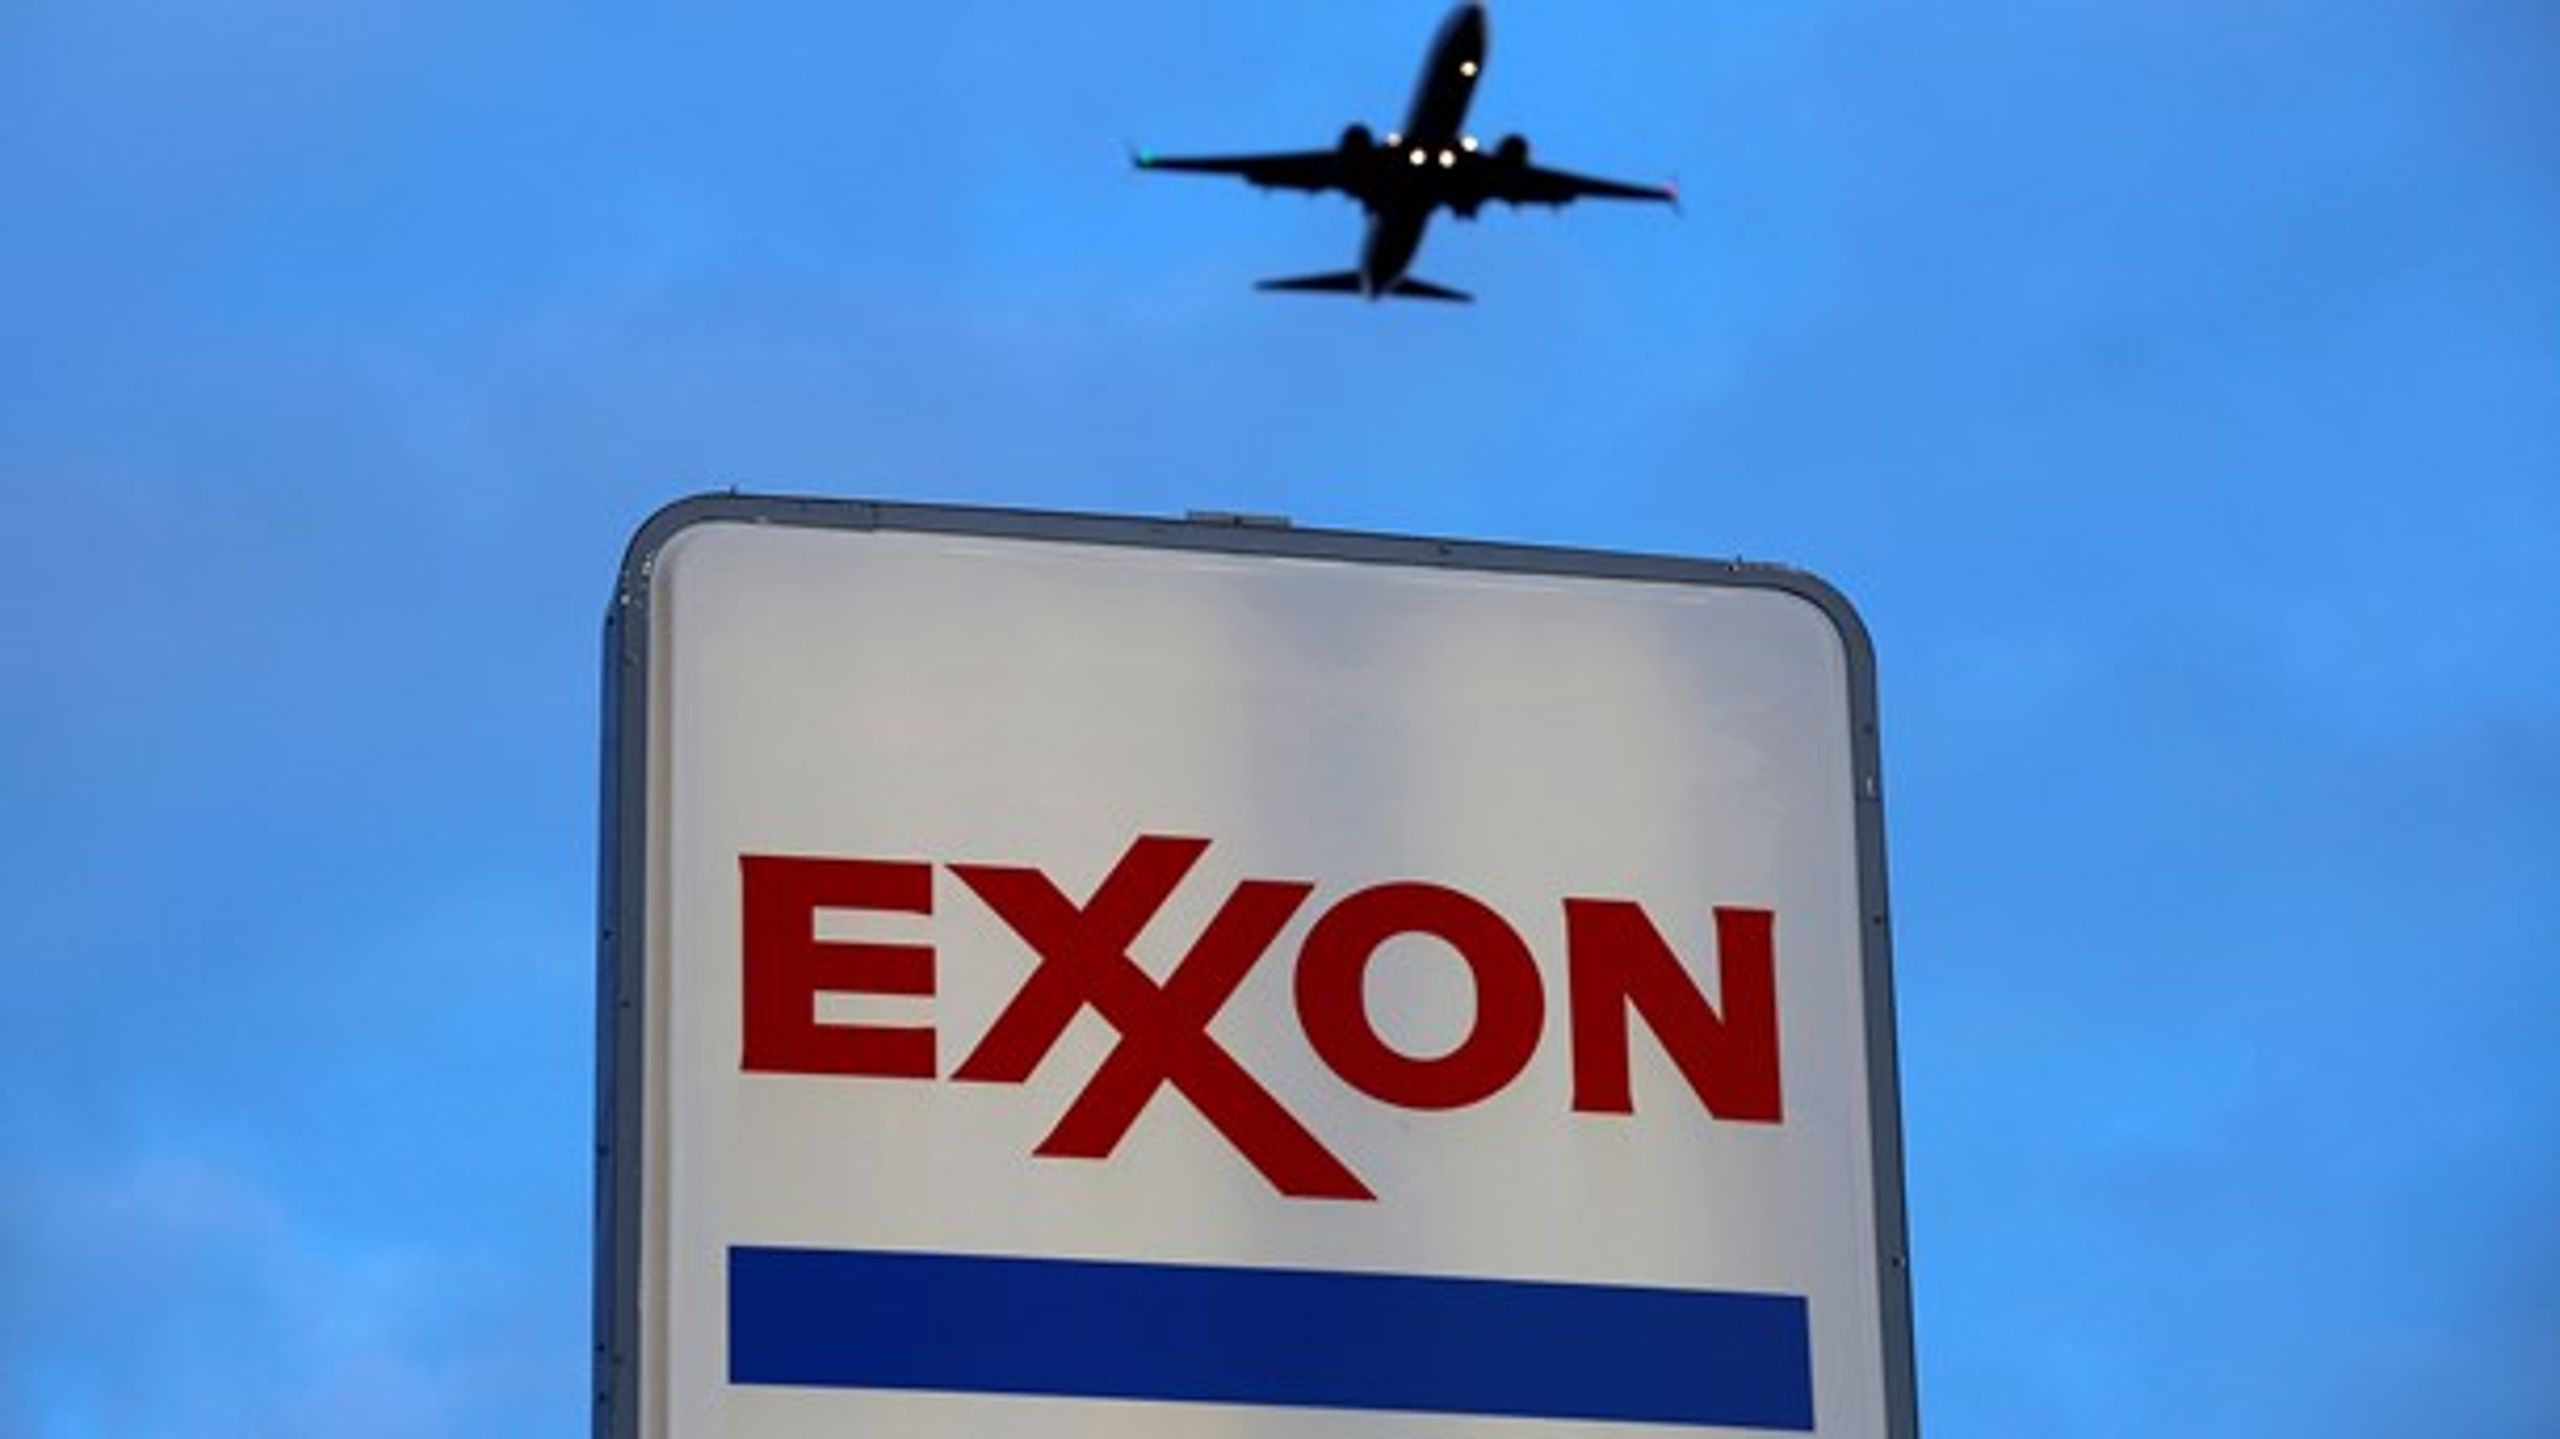 Exxon har sammen med andre af verdens&nbsp;største olieselskaber målrettet modarbejdet klimakampen, viser en ny DR-dokumentar.